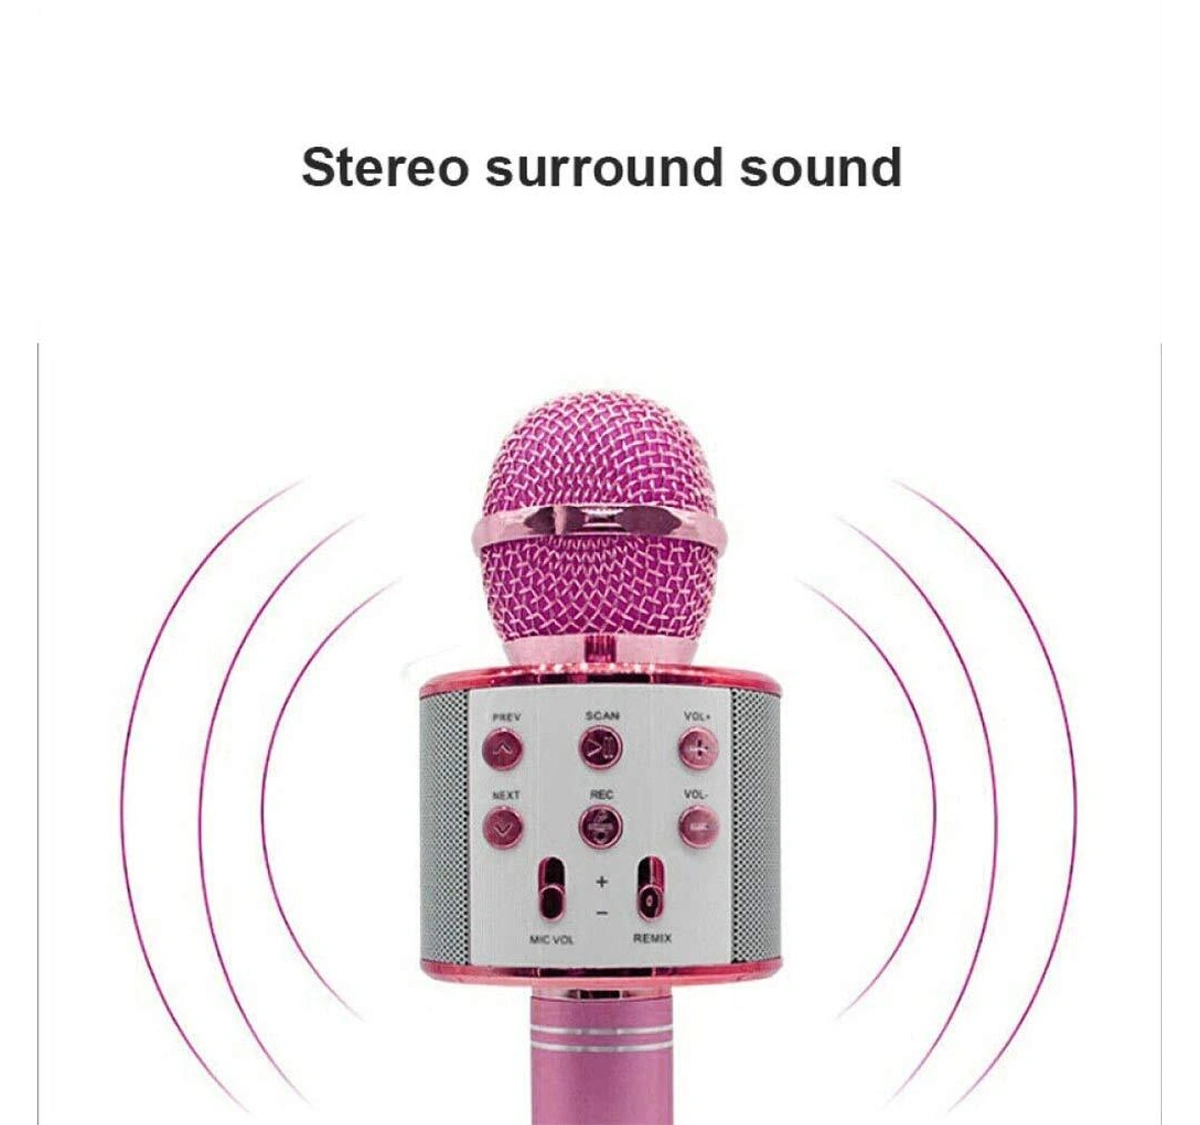 Wireless Bluetooth Karaoke Handheld Microphone with Mic Speaker(Pink)